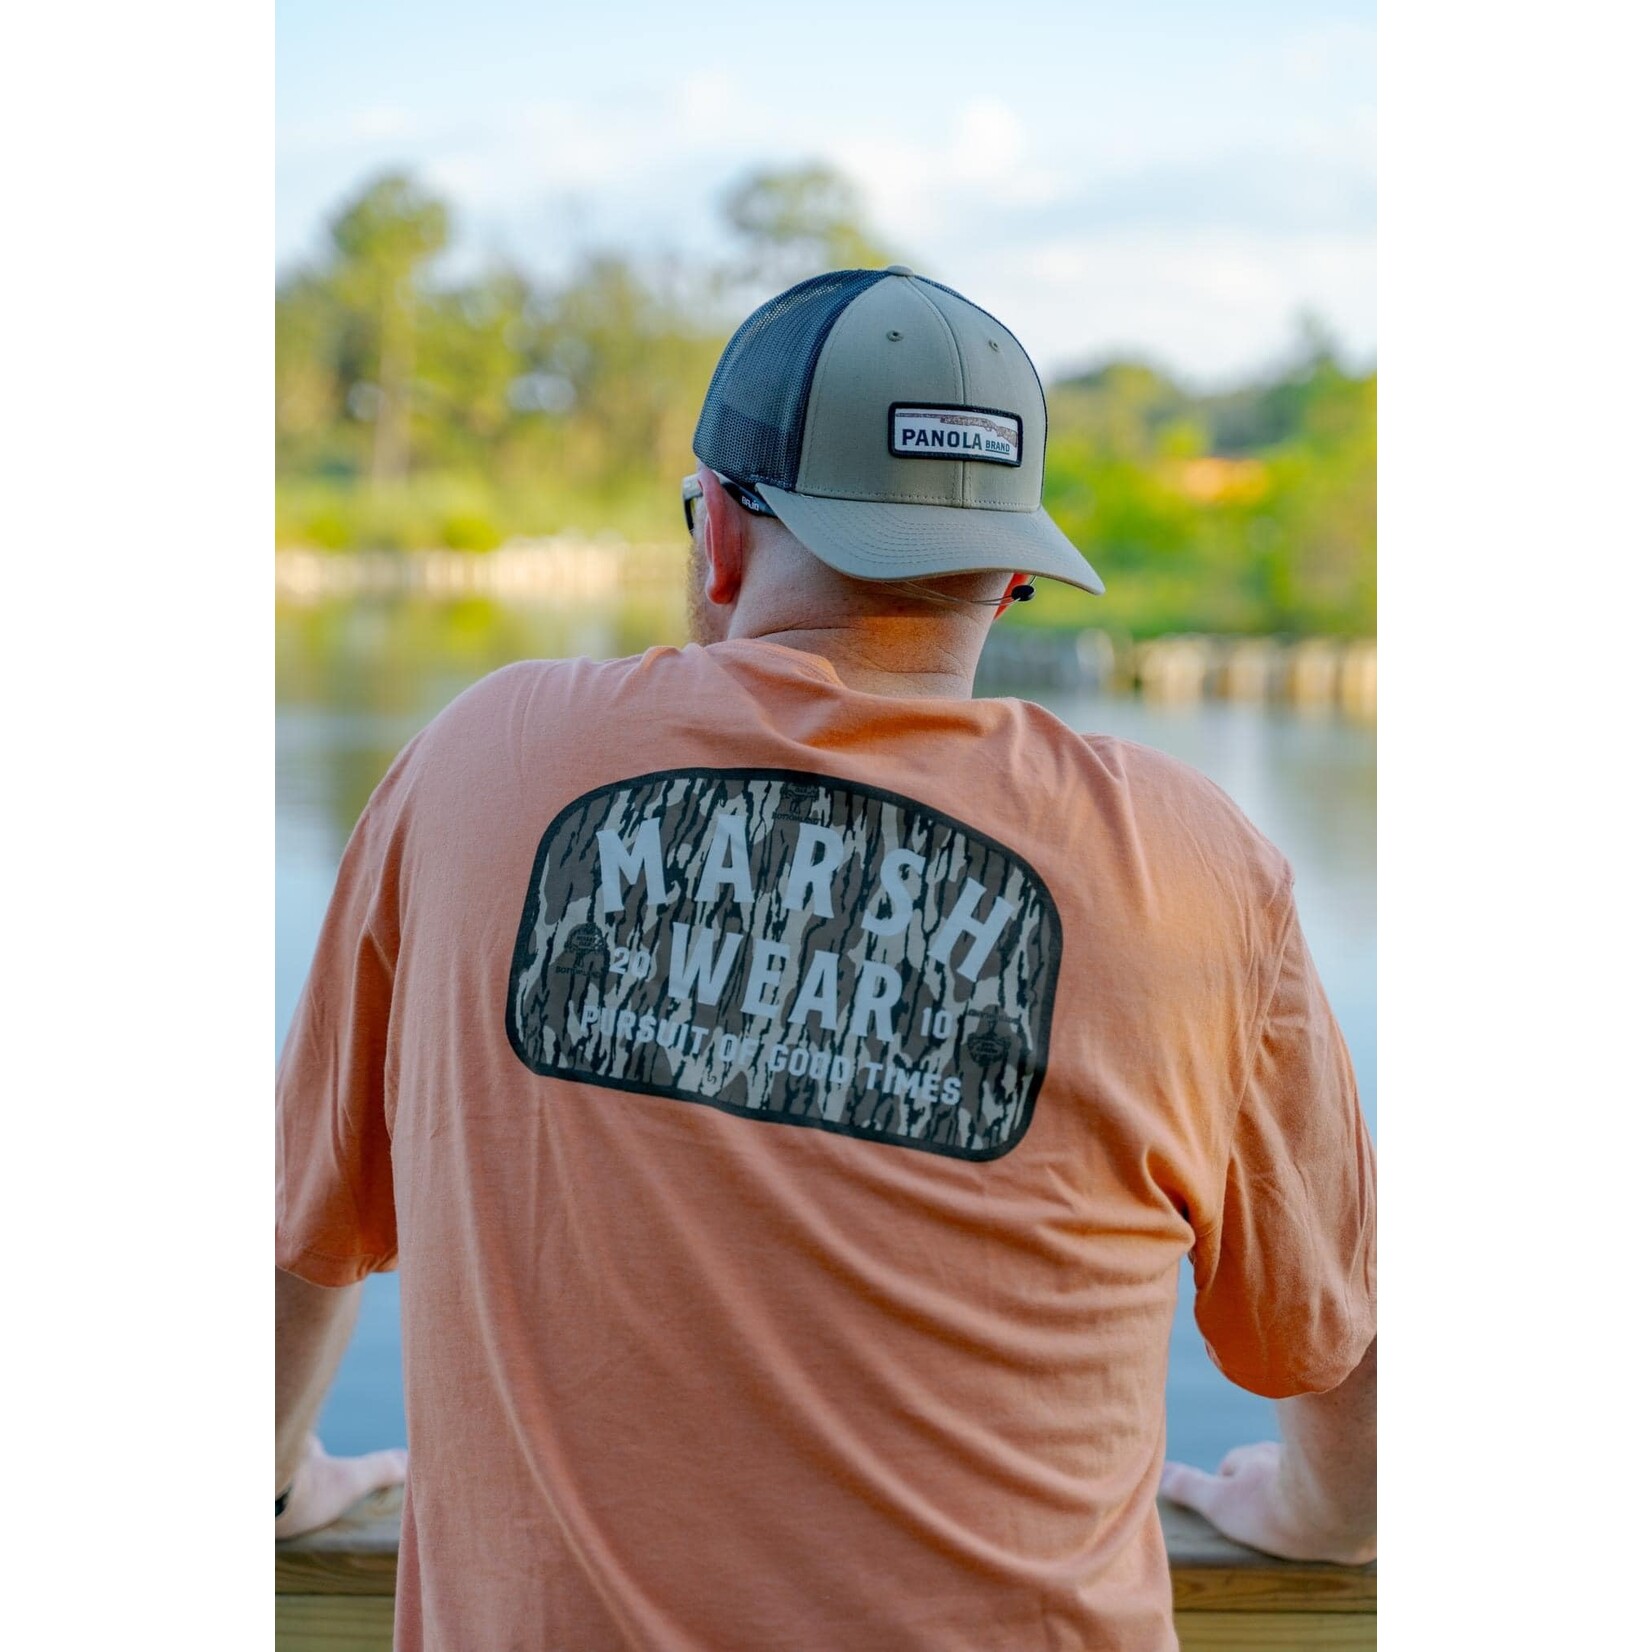 Marsh Wear Marsh Wear Apparel Men's Alton Camo Mossy Oak S/S TEE Shirt